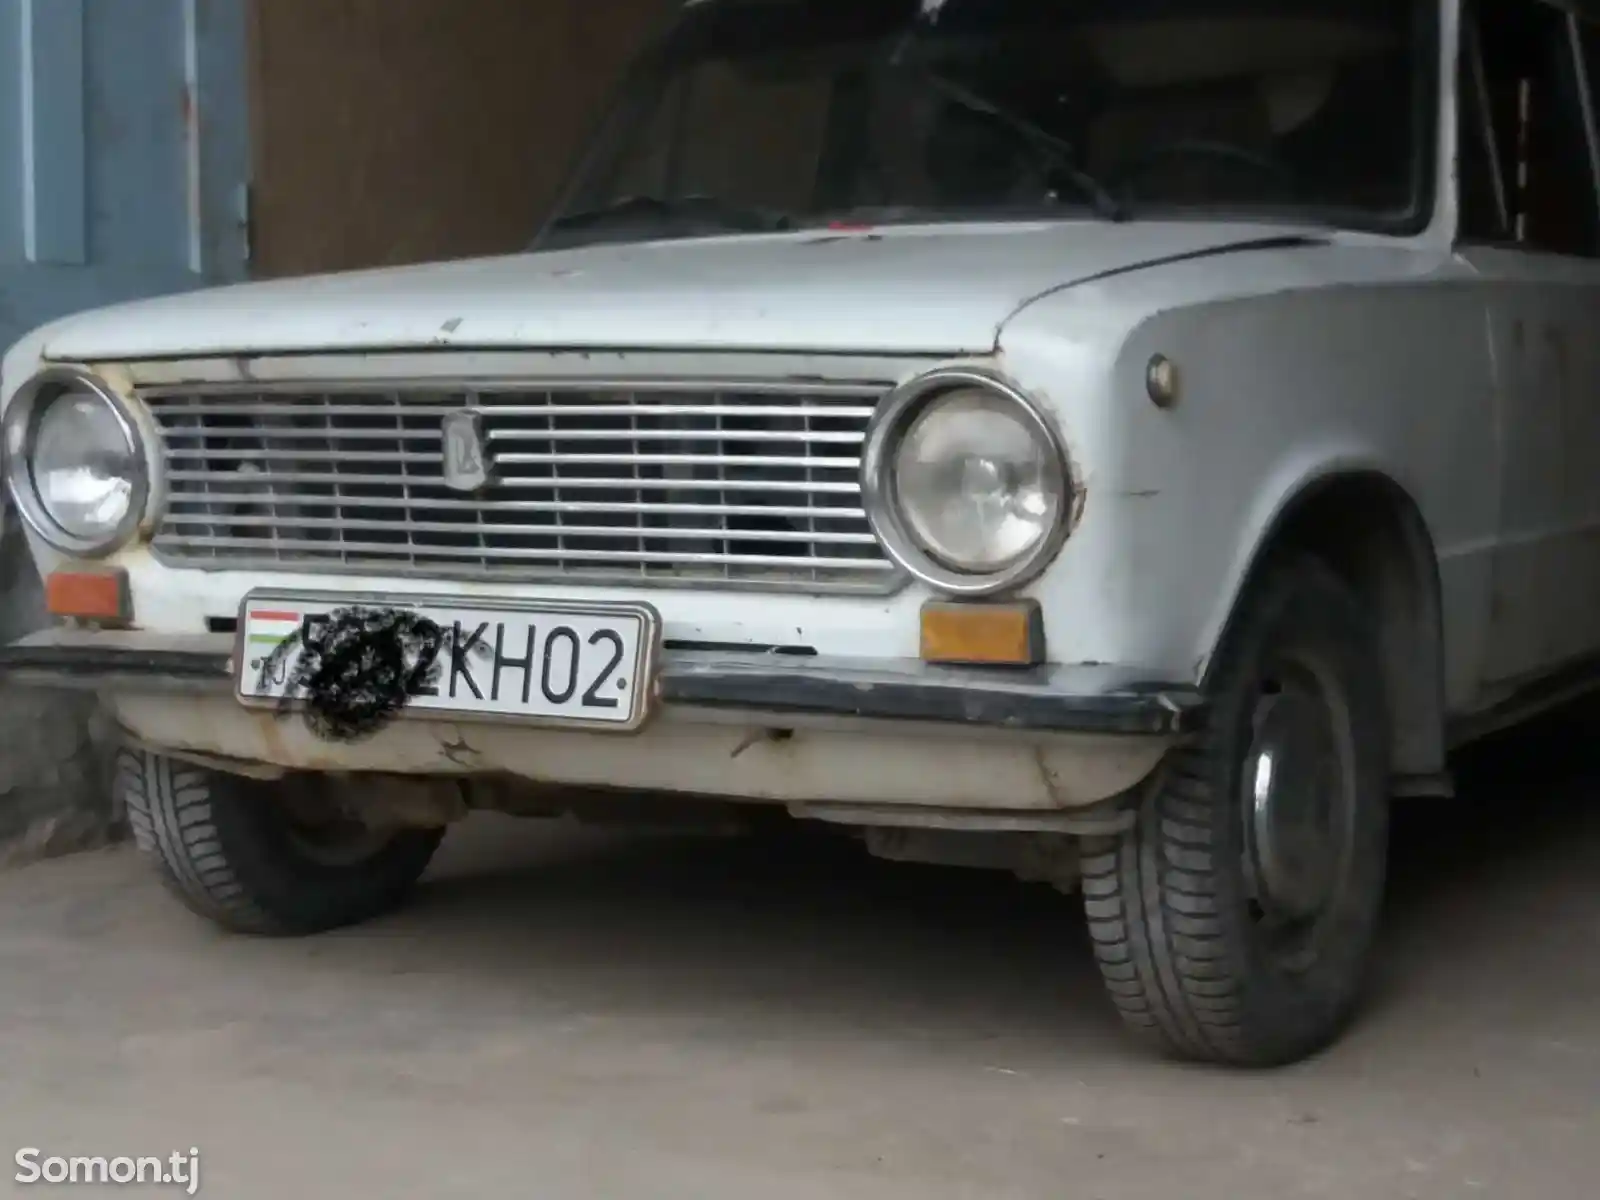 ВАЗ 2101, 1973-1